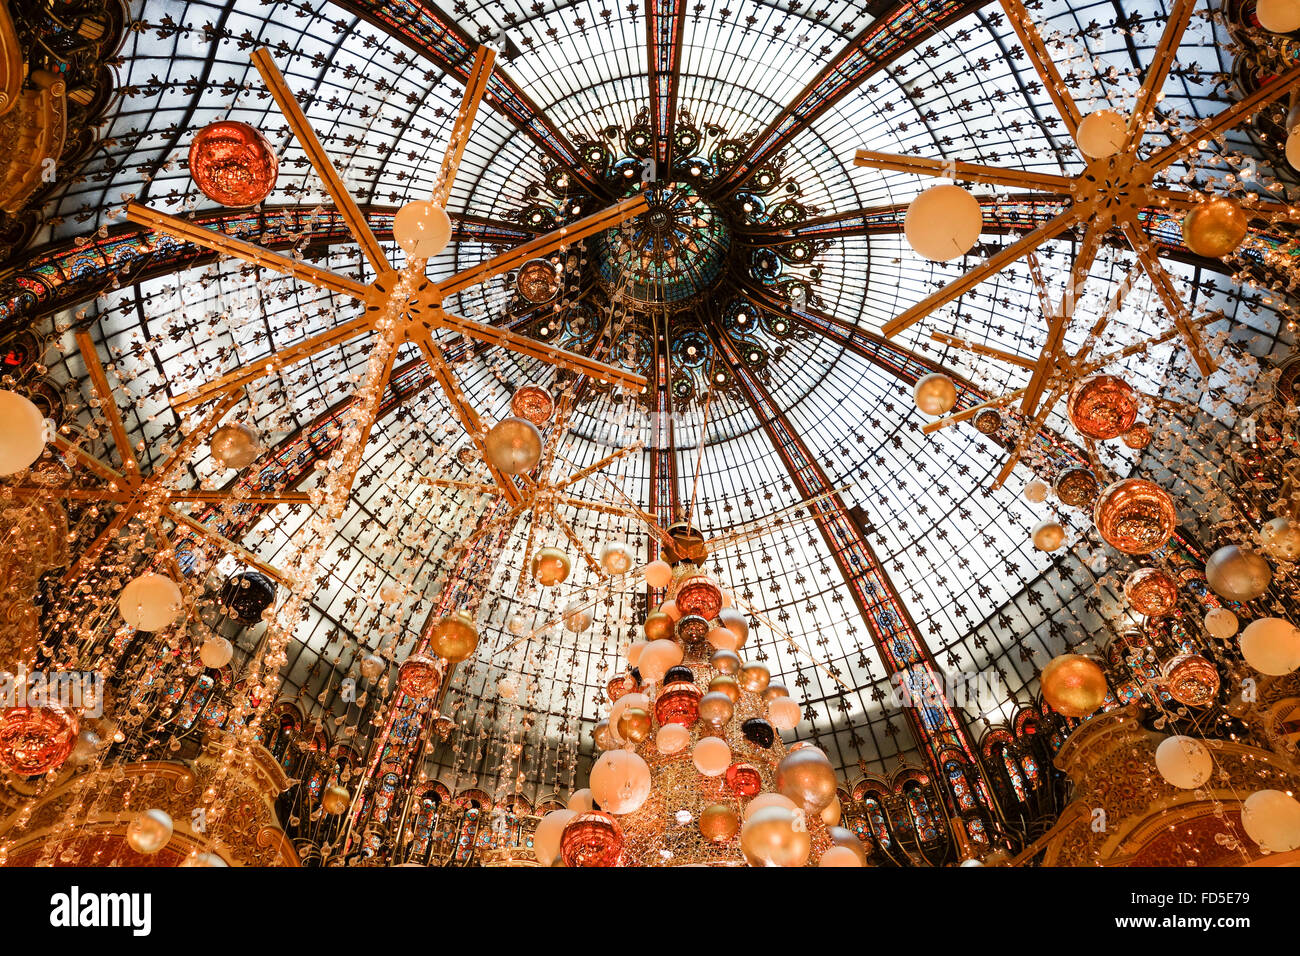 La cupola, interni decorazioni di Natale presso Galeries Lafayette shopping mall, Parigi, Francia. Foto Stock